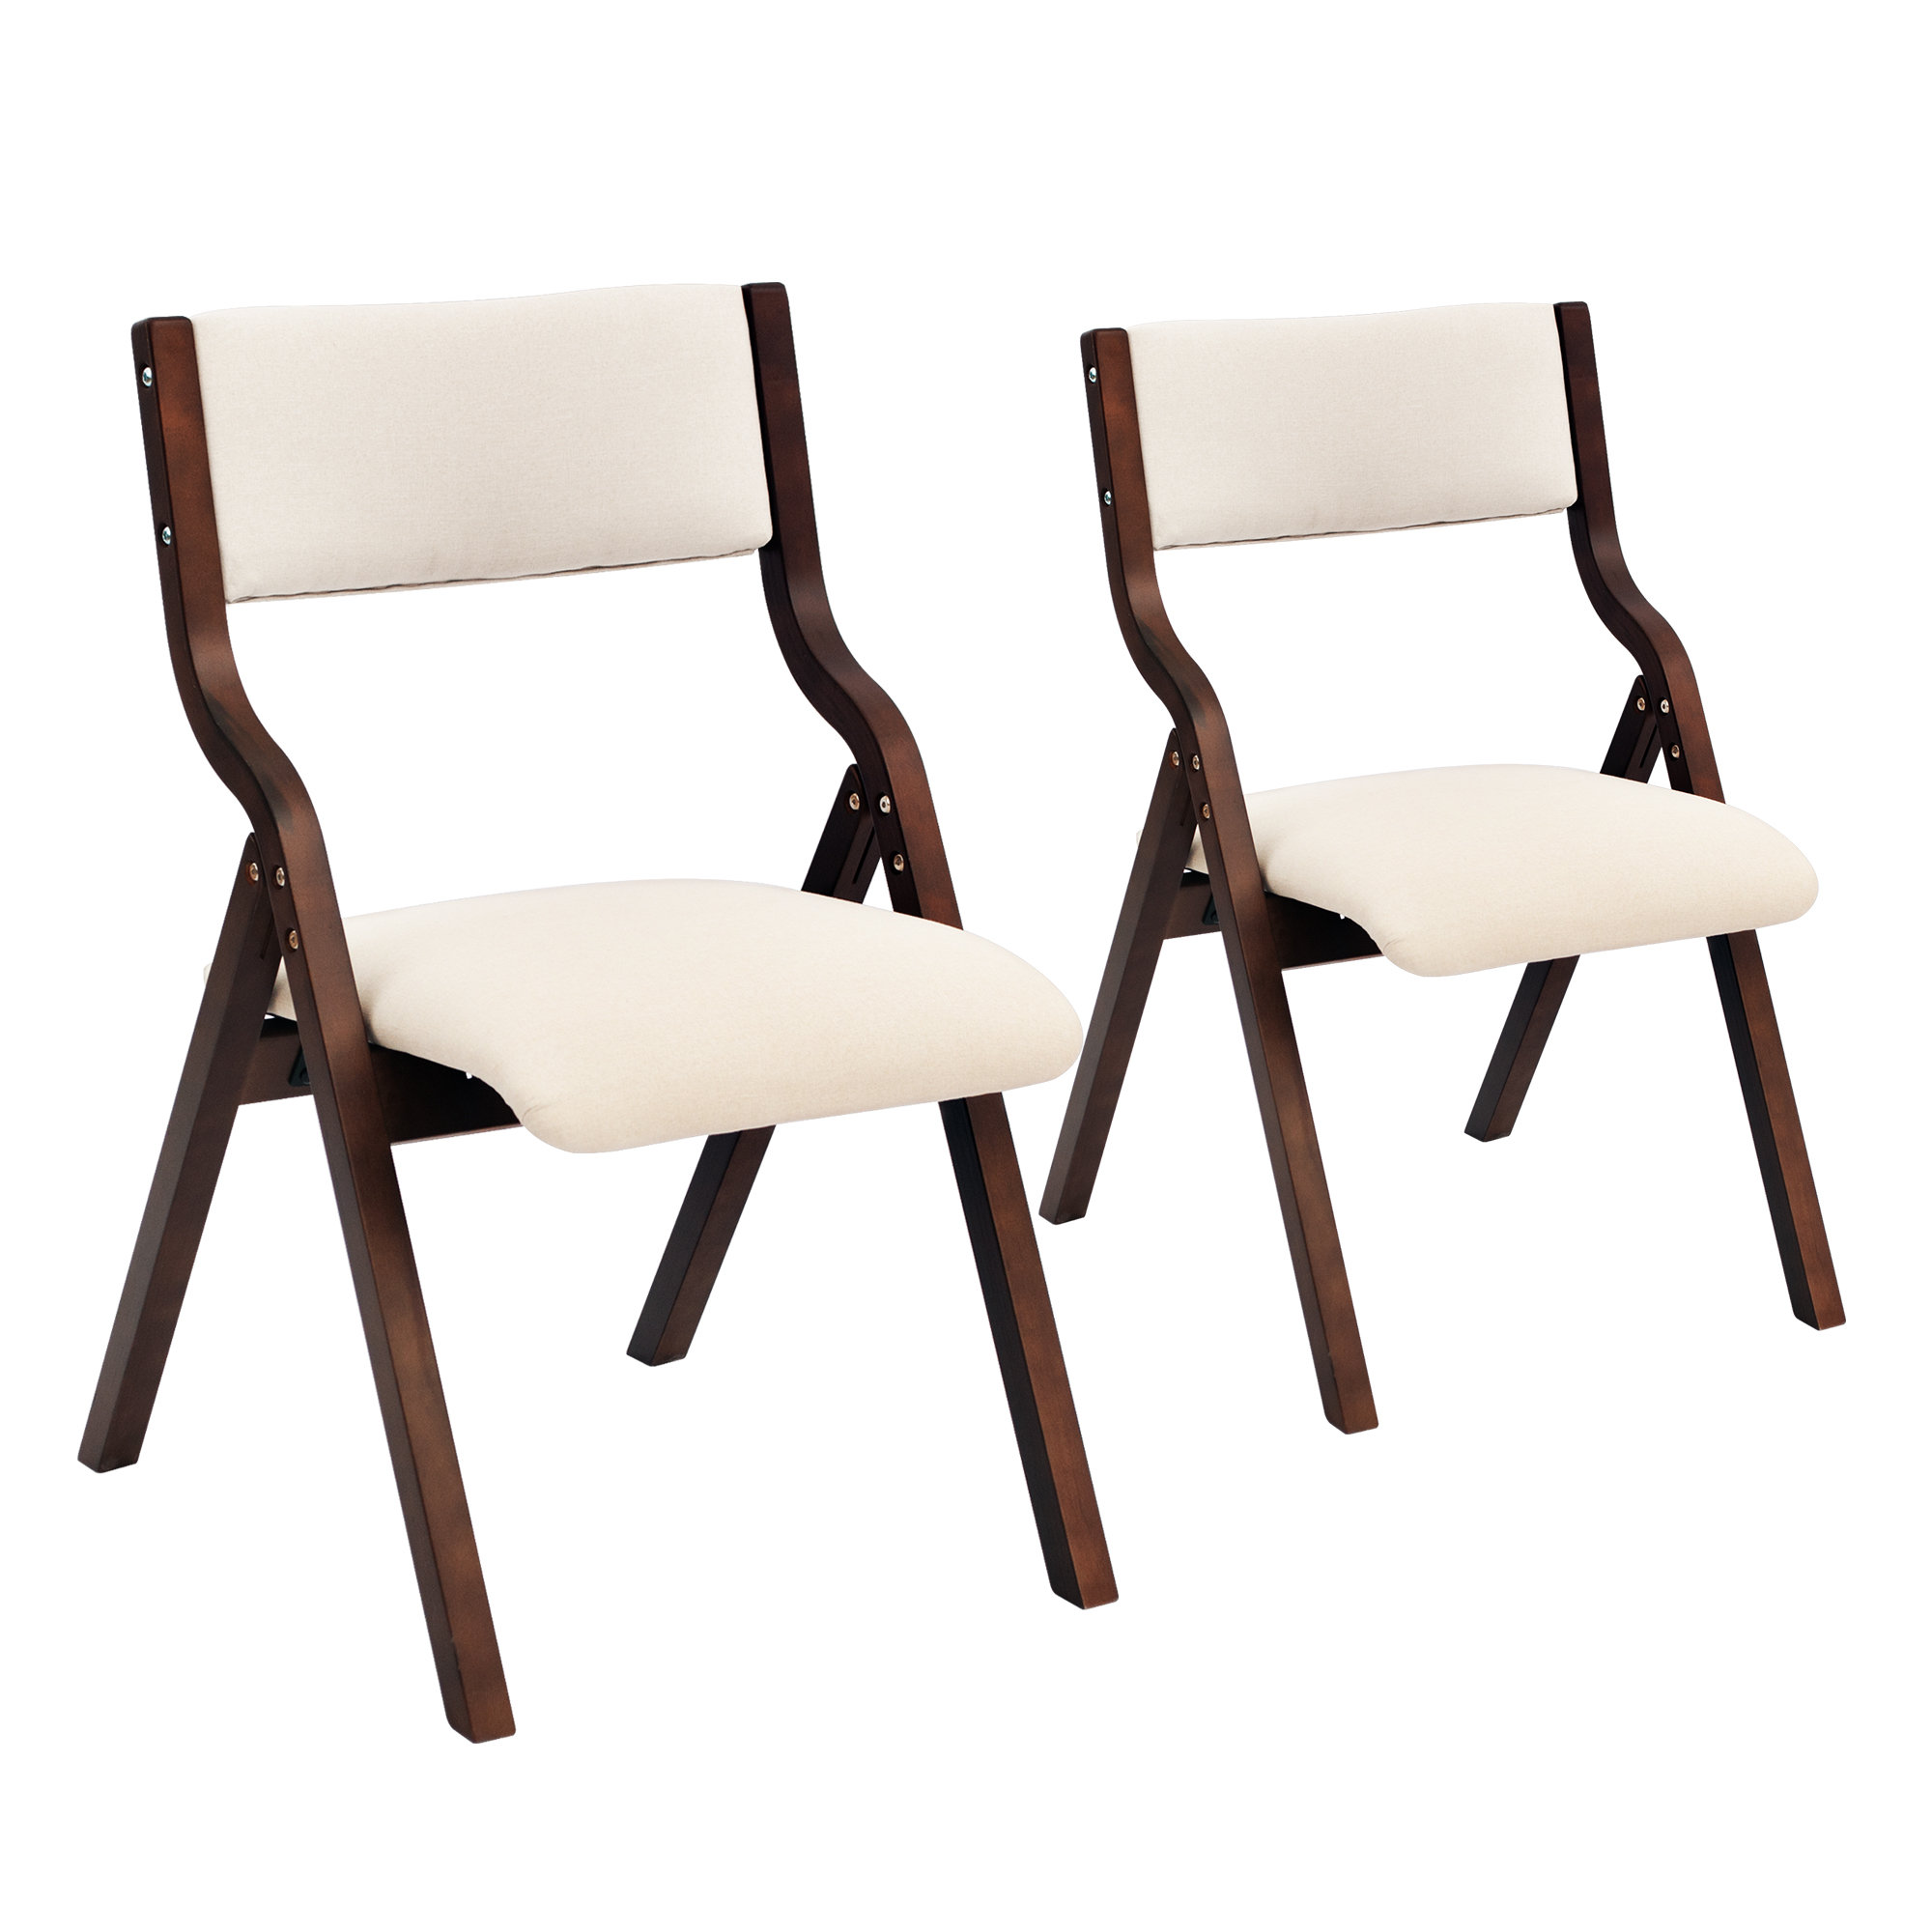 https://assets.wfcdn.com/im/02177310/compr-r85/2394/239477505/edenbourgh-fabric-padded-stackable-folding-chair-folding-chair-set.jpg